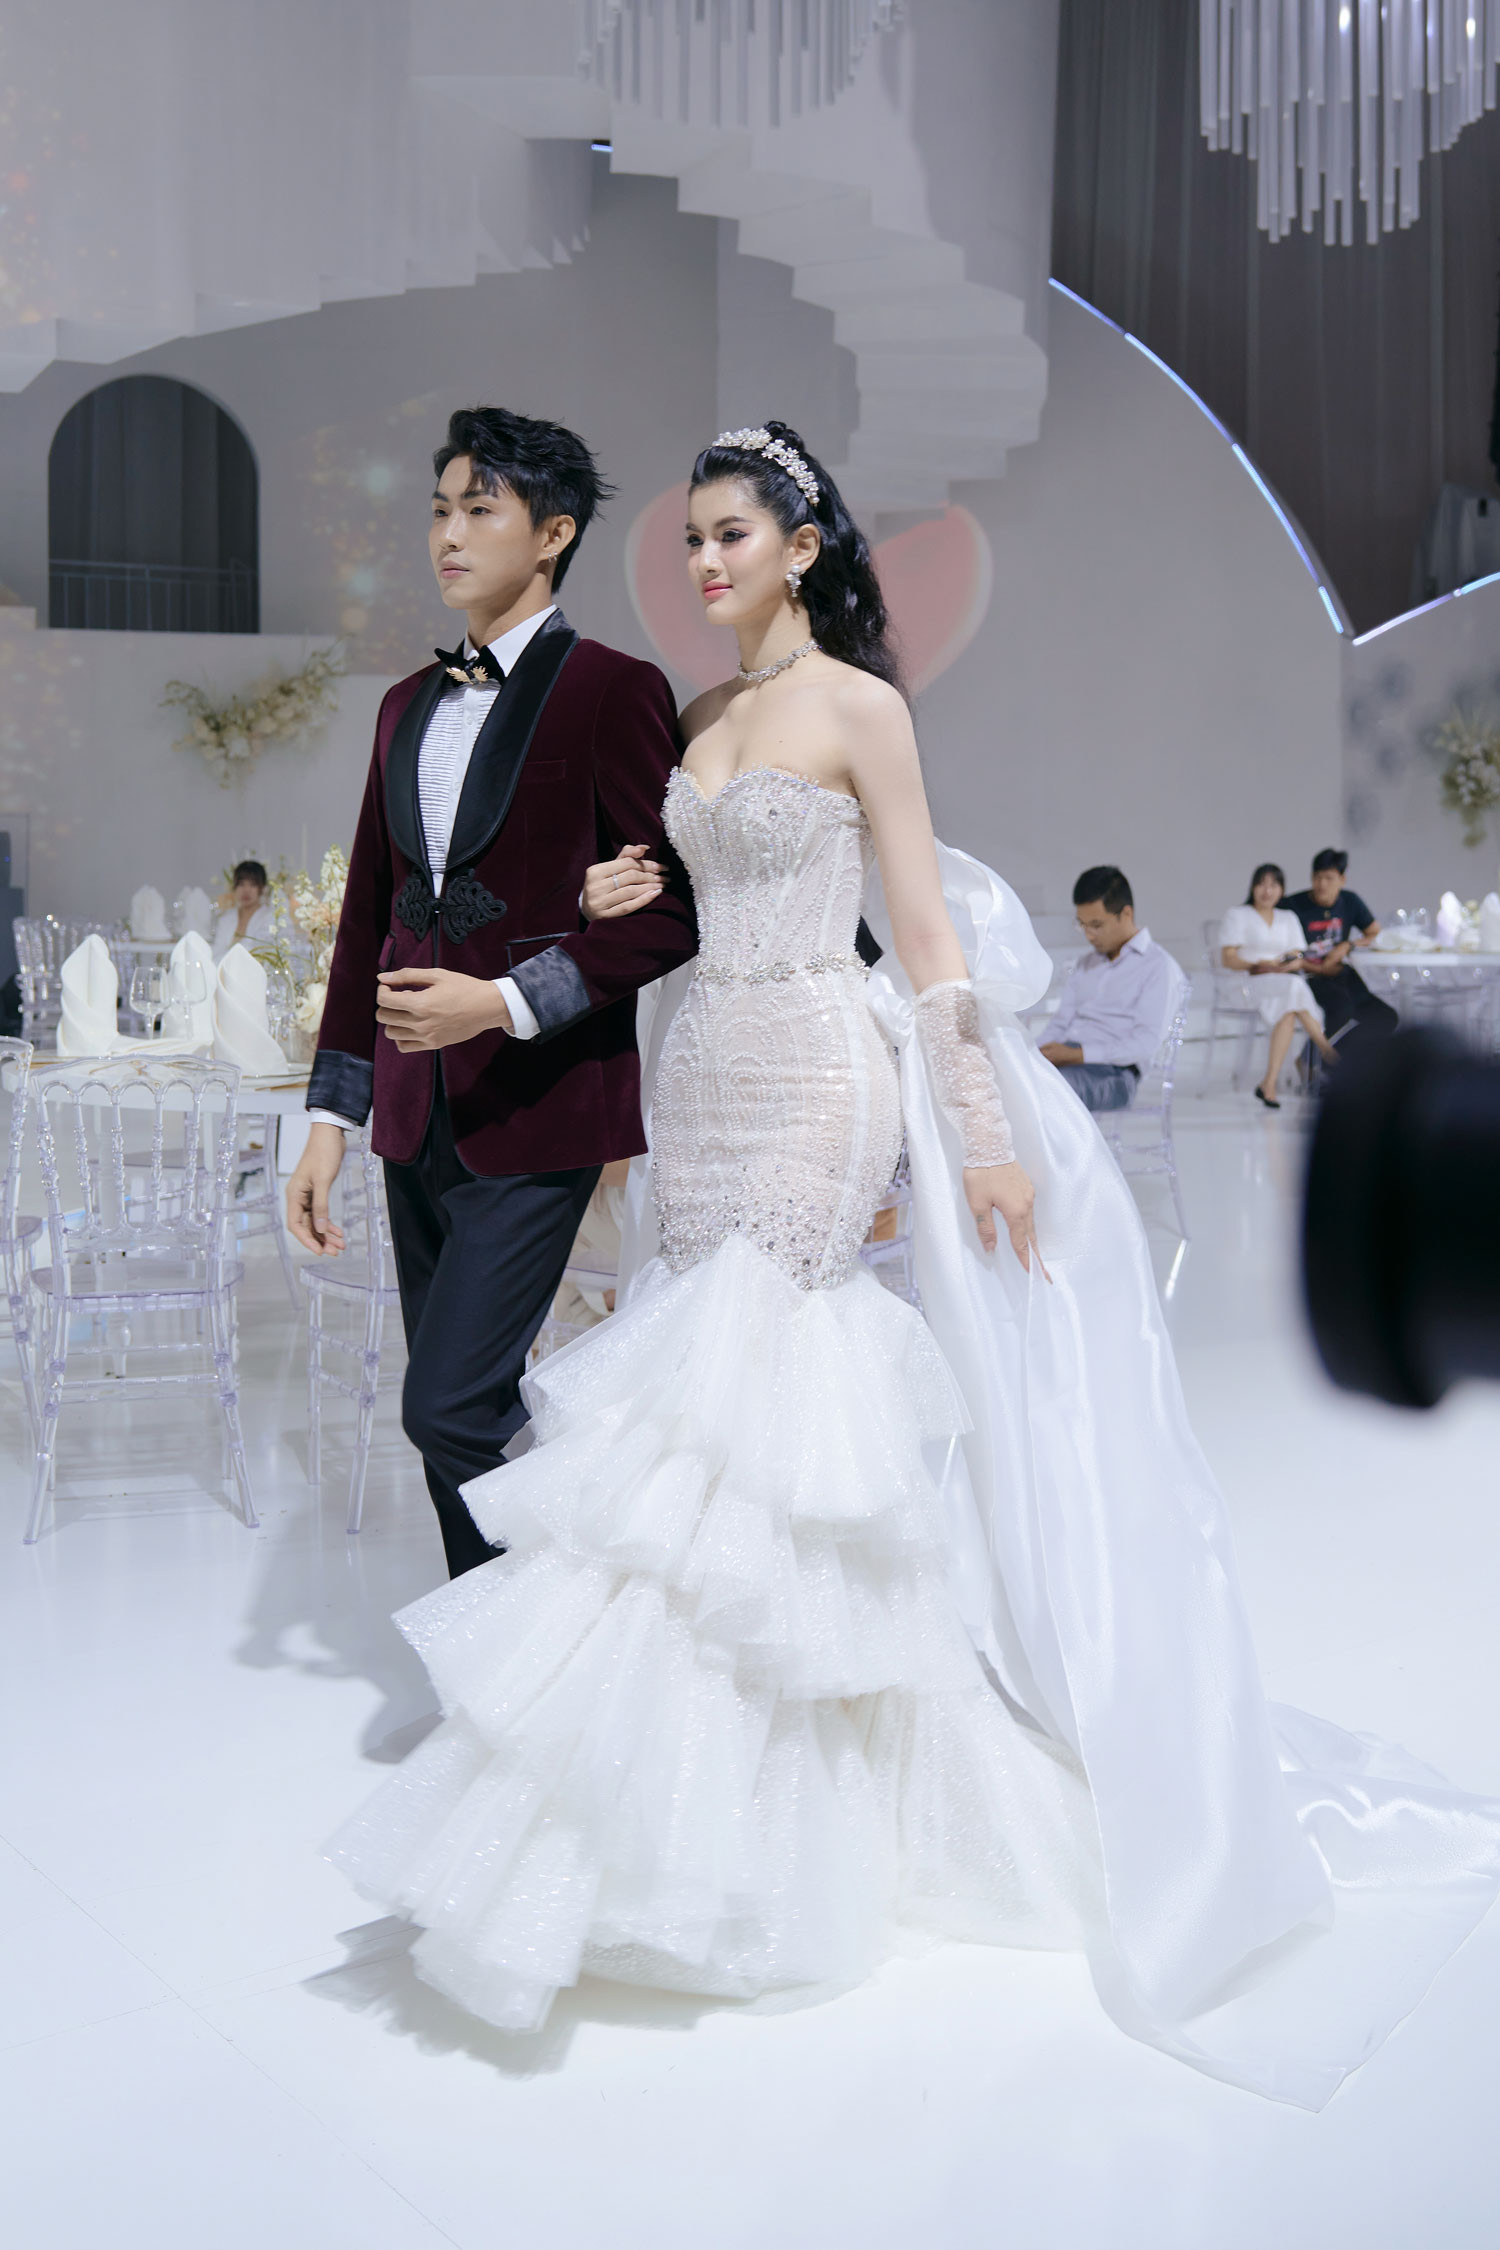 Á hậu Hương Ly tổ chức đám cưới tại sàn diễn thời trang - ảnh 6